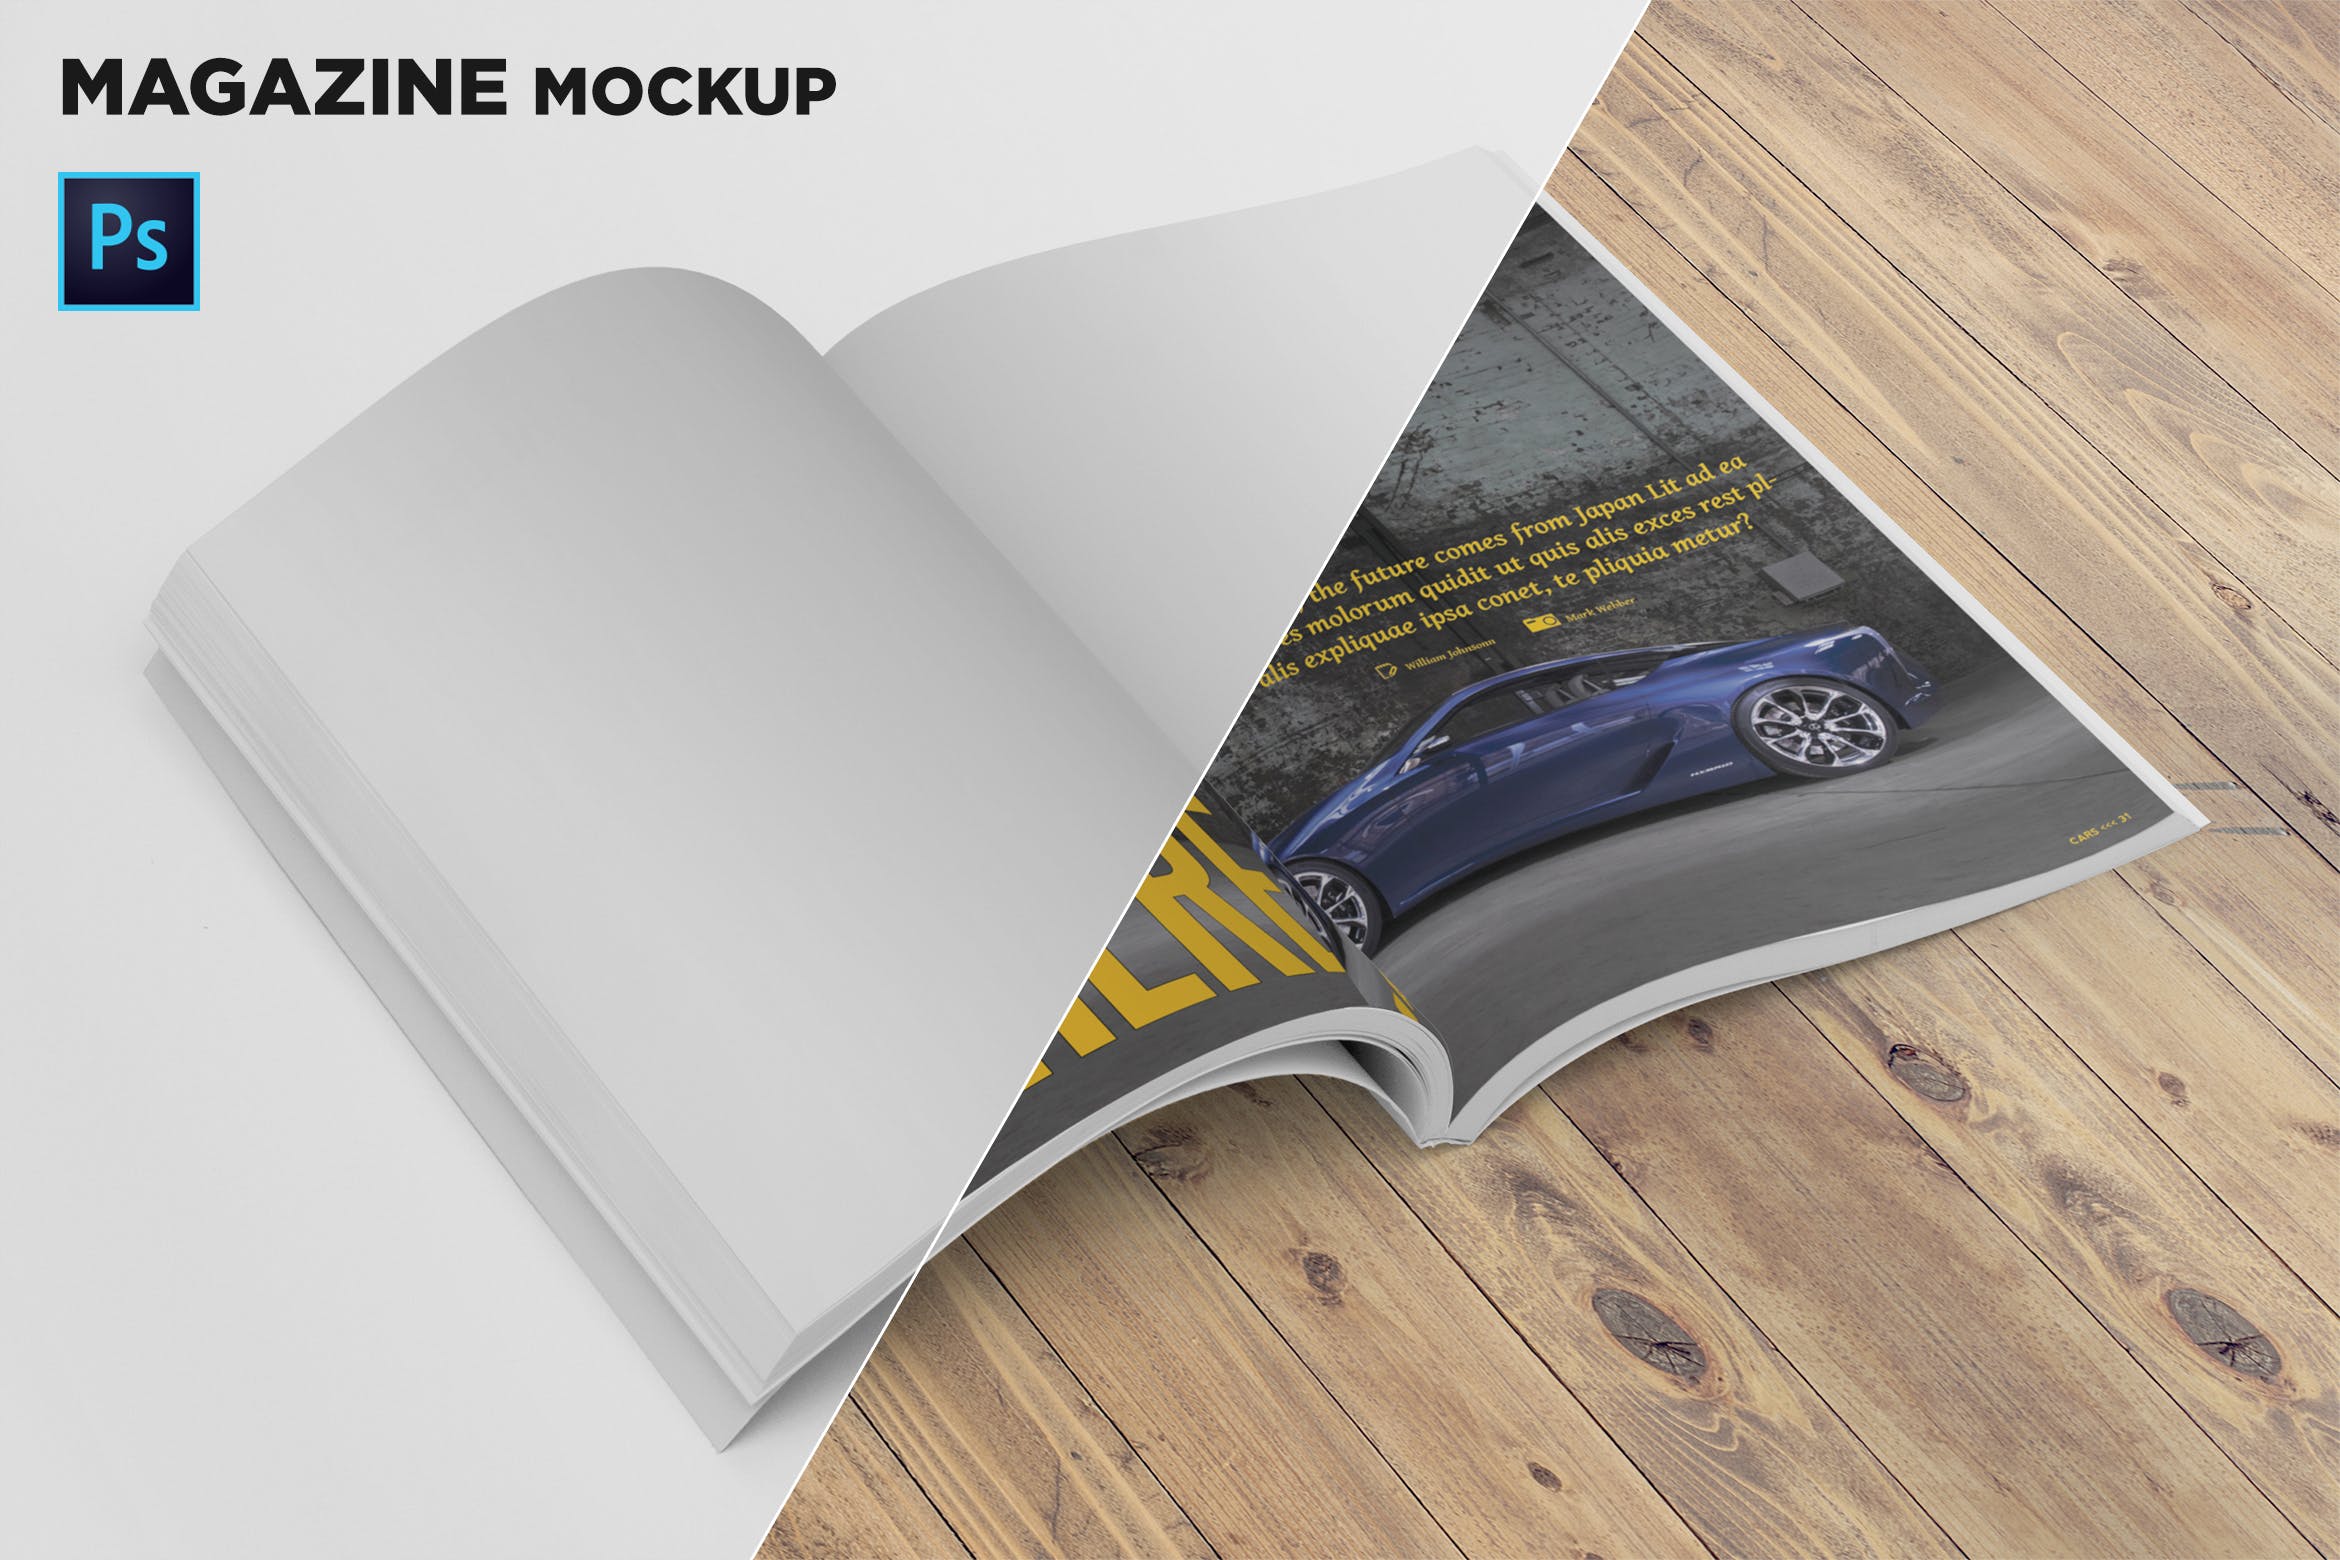 杂志内页排版设计翻页透视图样机第一素材精选 Magazine Mockup Folded Page Perspective View插图